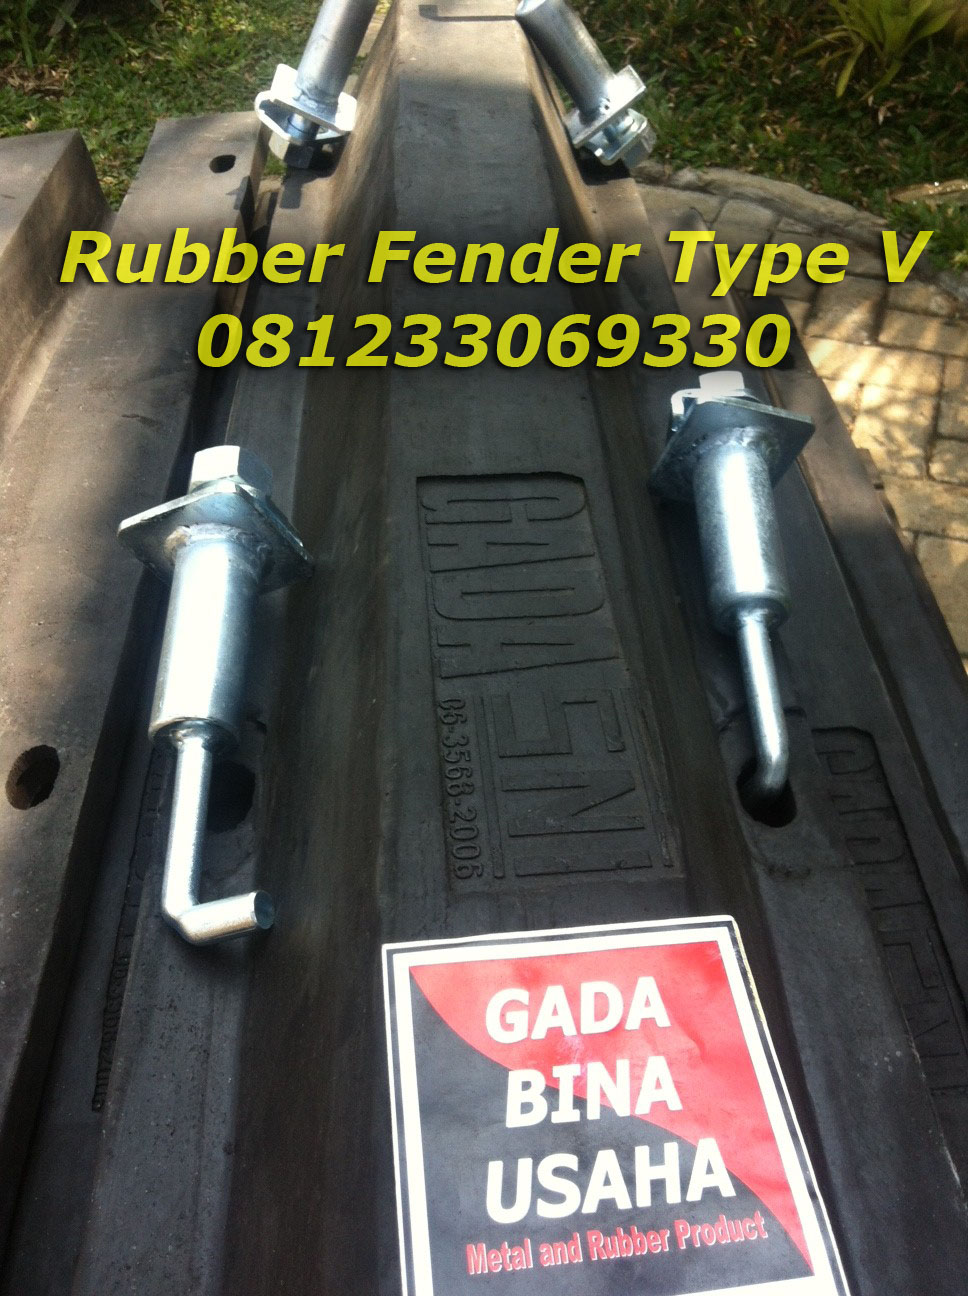 Rubber Fender